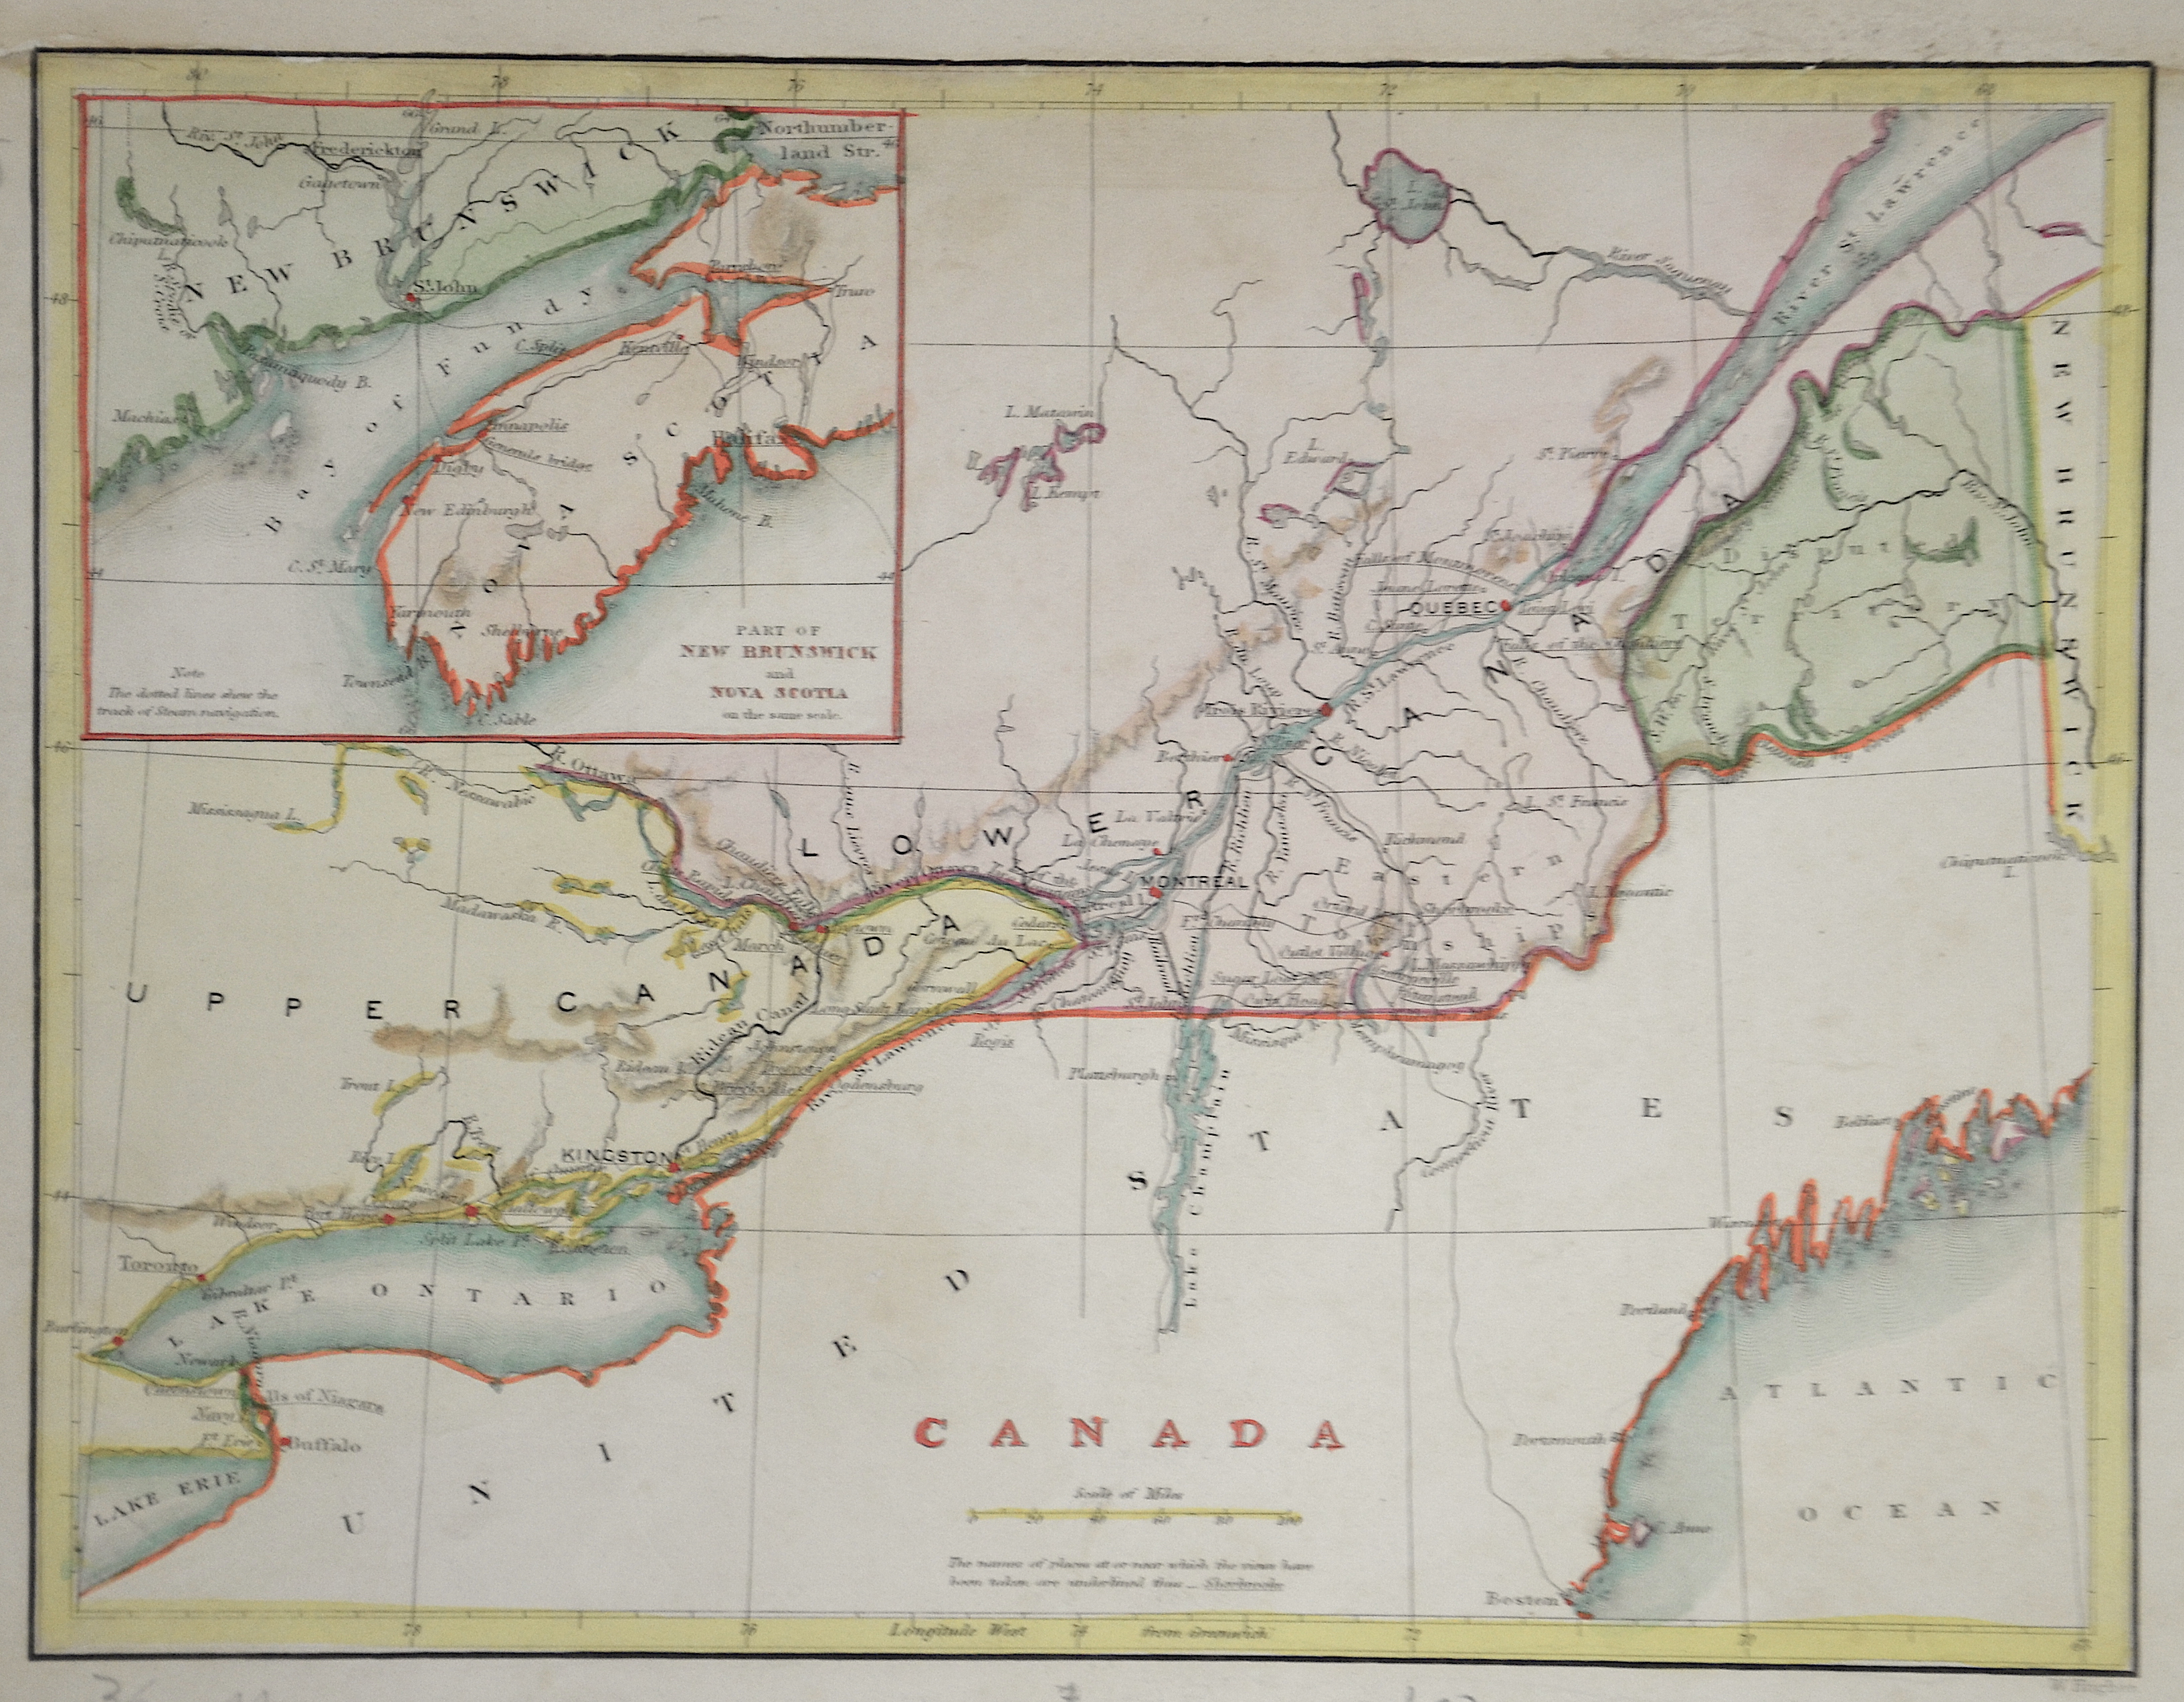 Hughes W. Canada / Parte of New Brunswick and Nova Scotia